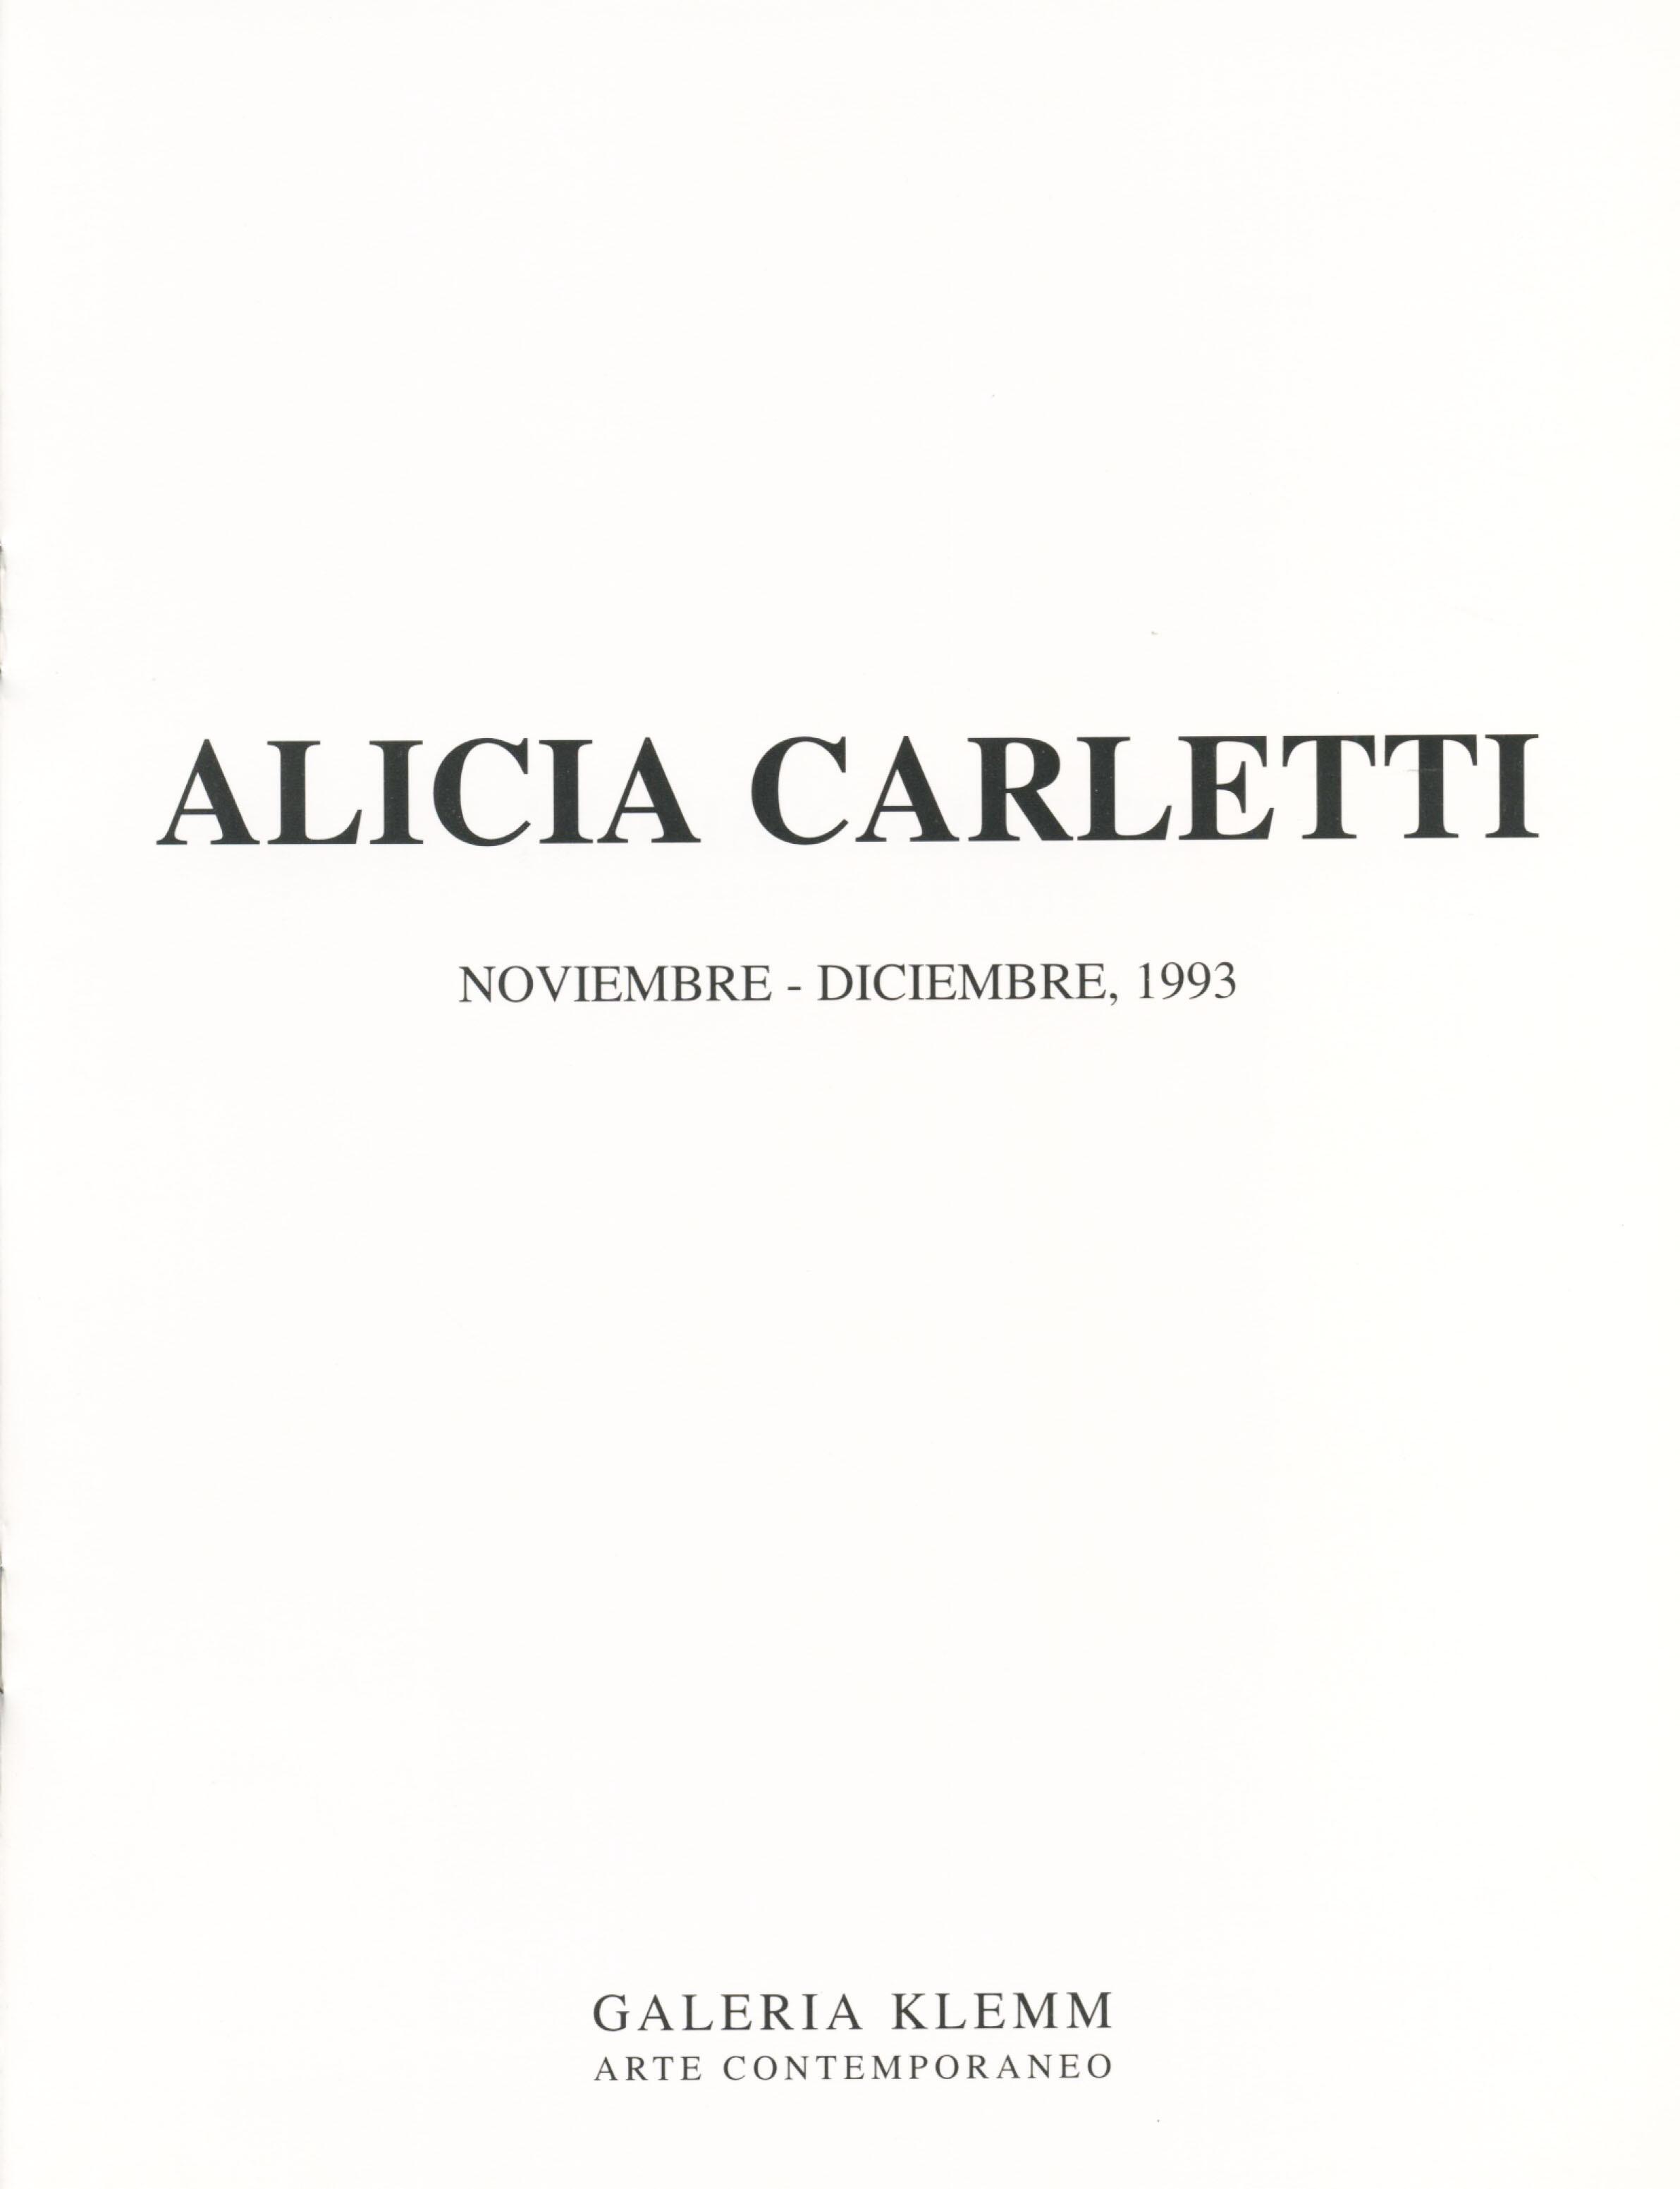 Alicia Carletti